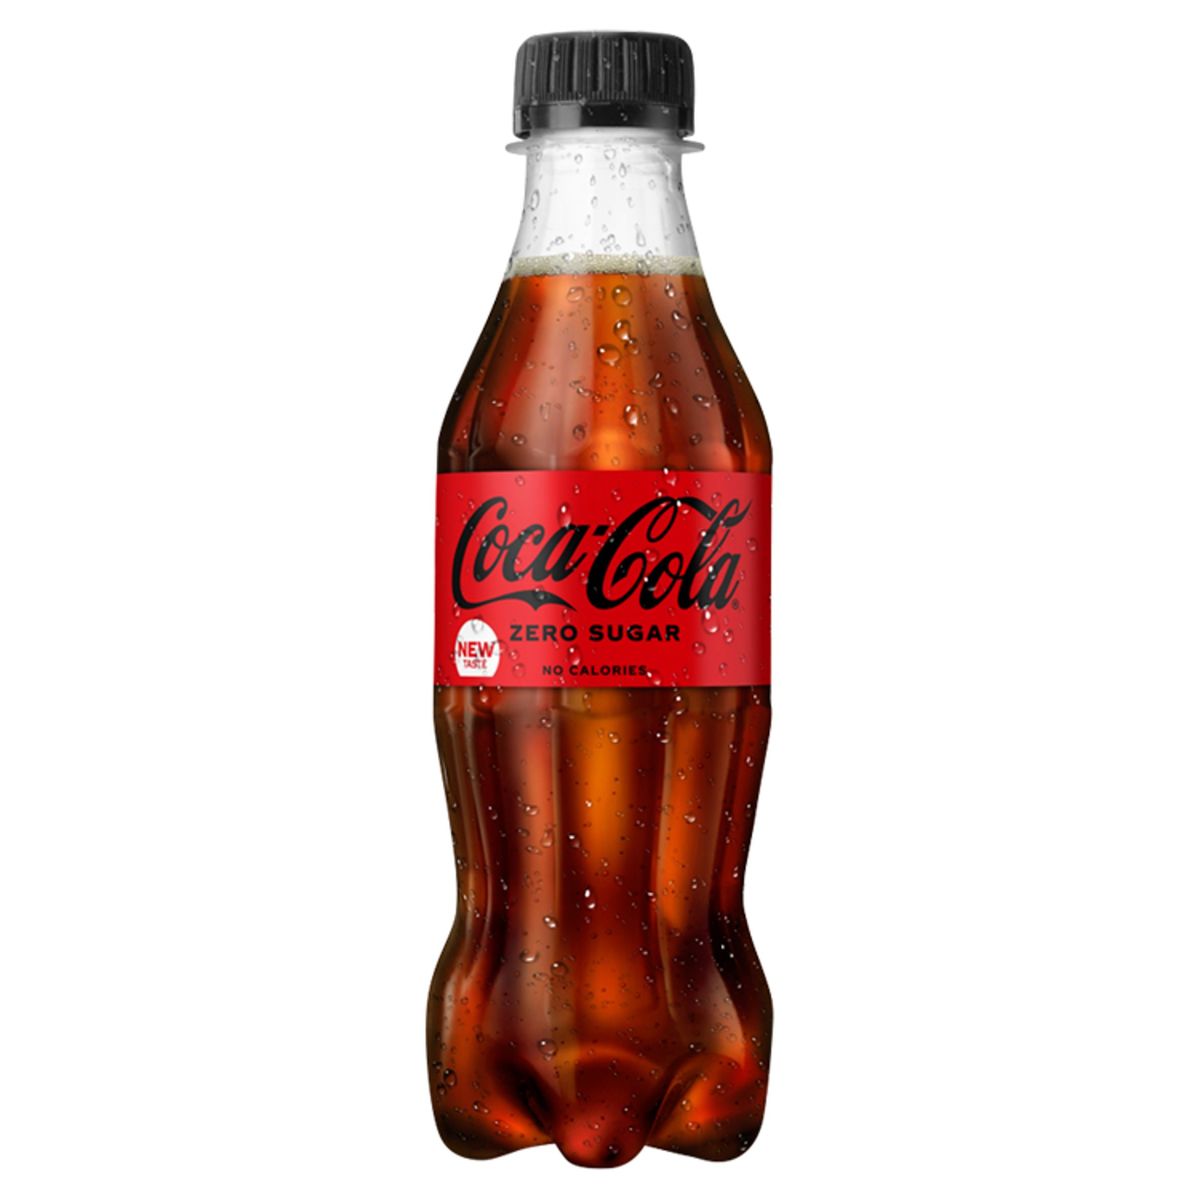 Coca-Cola Zero Coke Soft drink Pet 250 ml